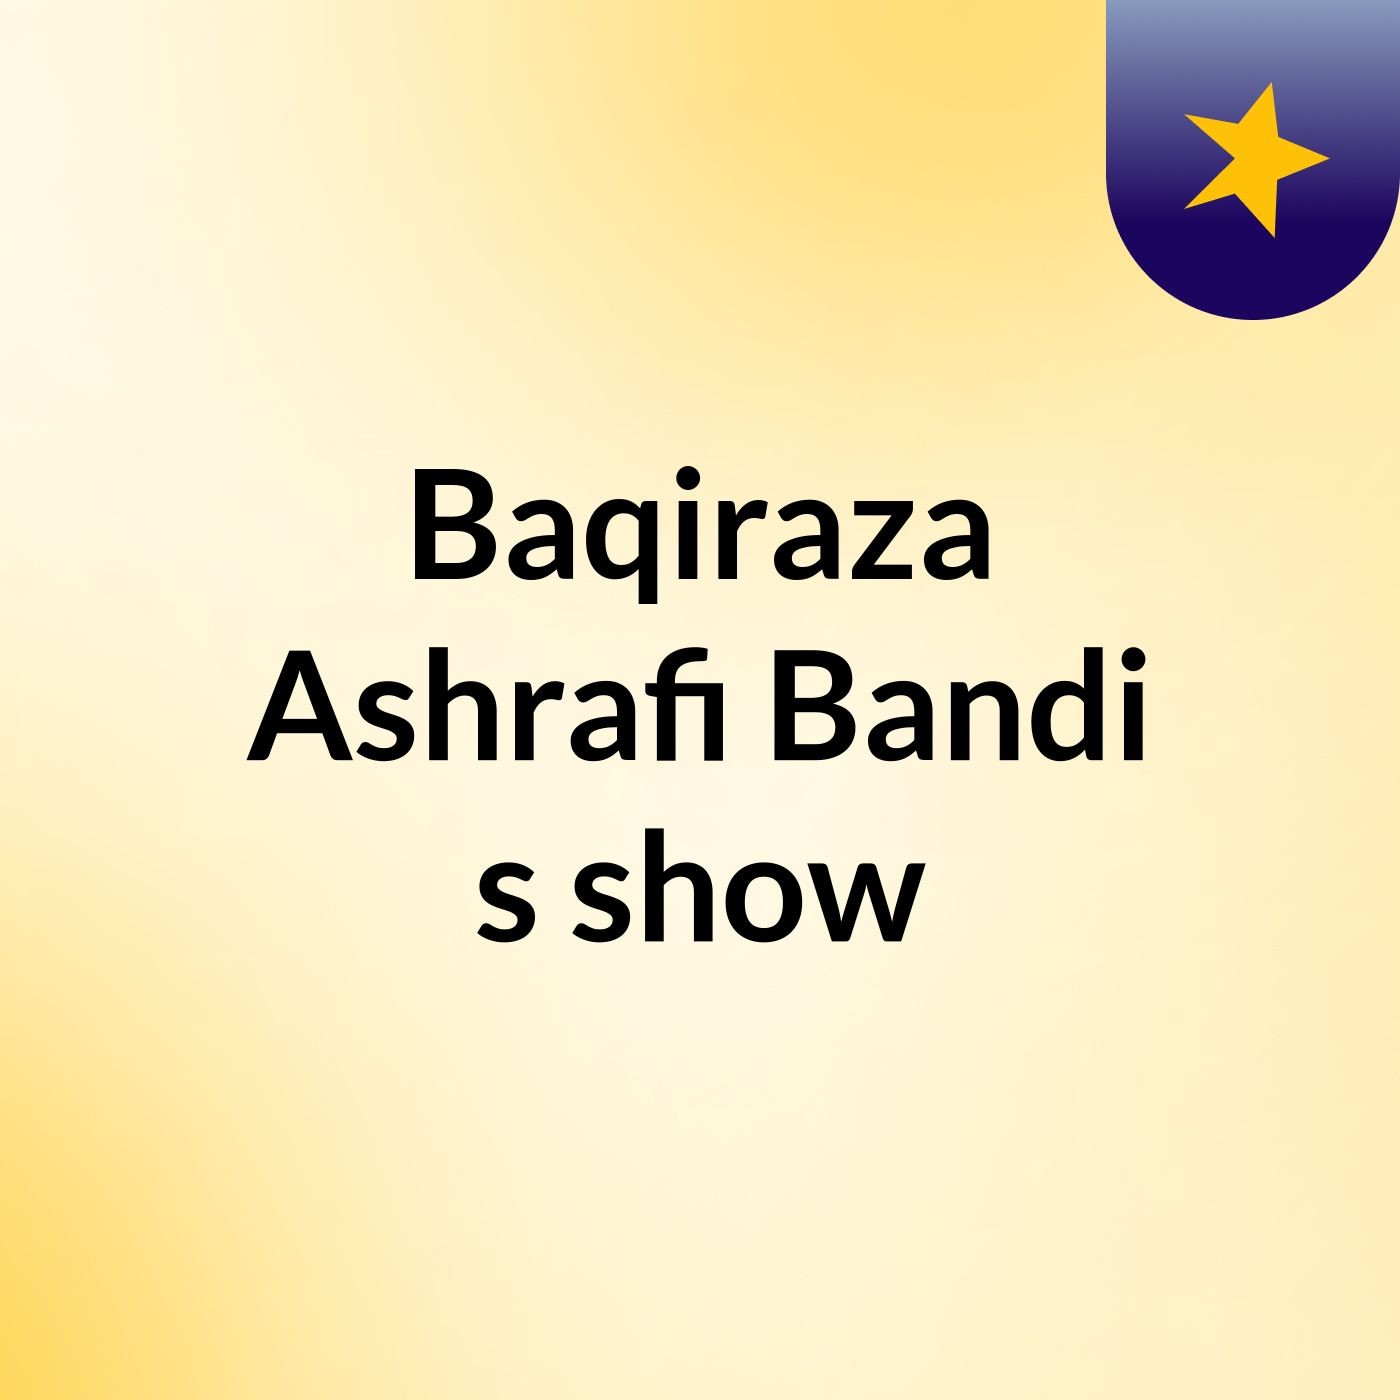 Baqiraza Ashrafi Bandi's show